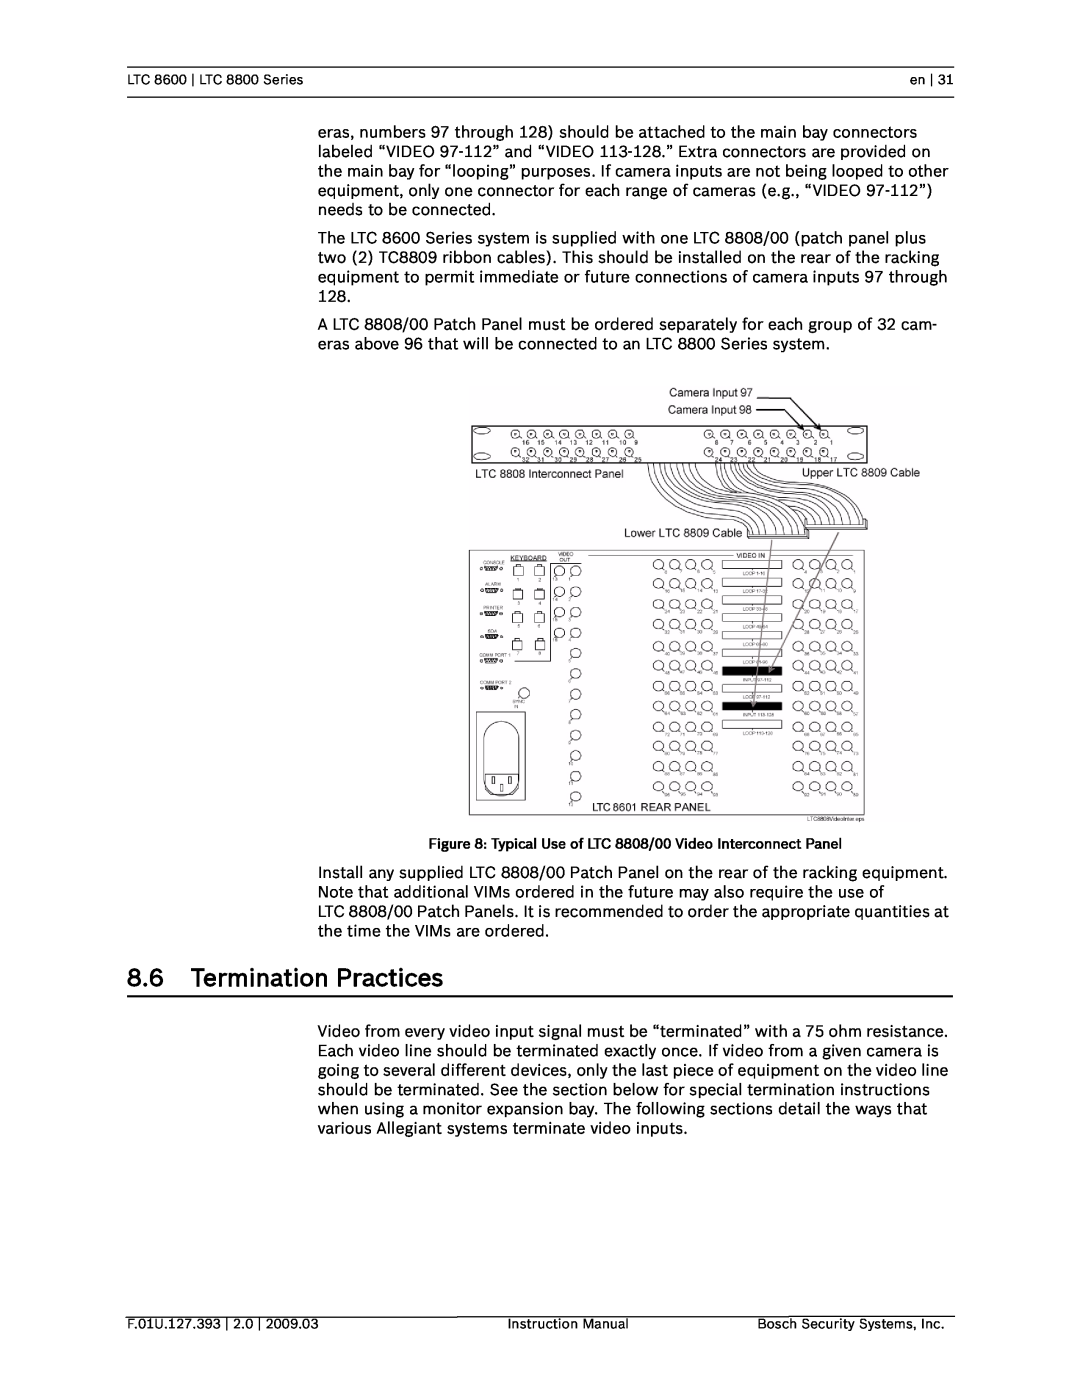 Bosch Appliances LTC 8800, LTC 8600 instruction manual 8.6Termination Practices 